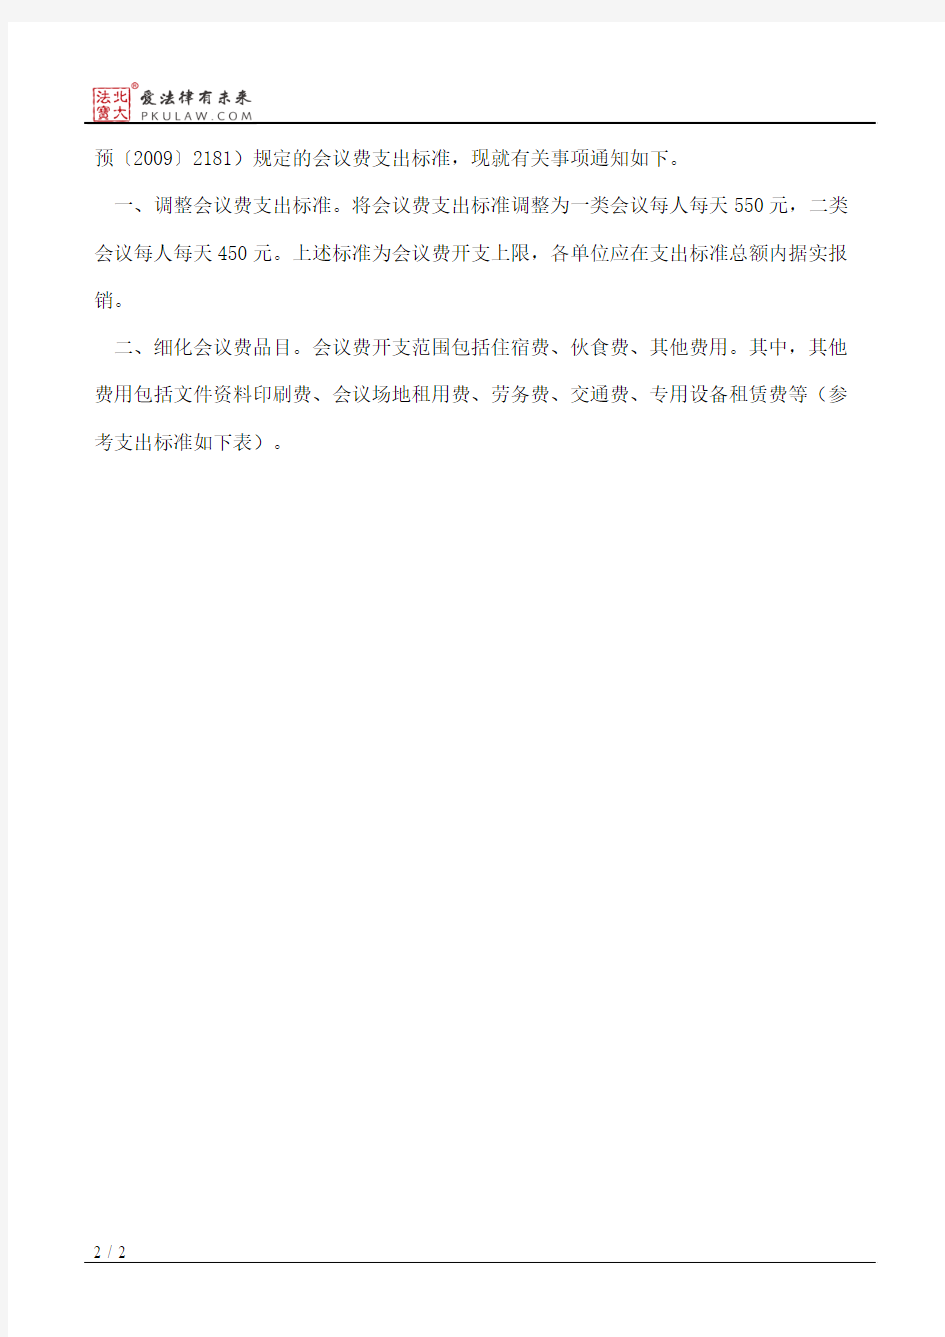 北京市财政局关于调整北京市市级行政事业单位会议费开支标准的通知